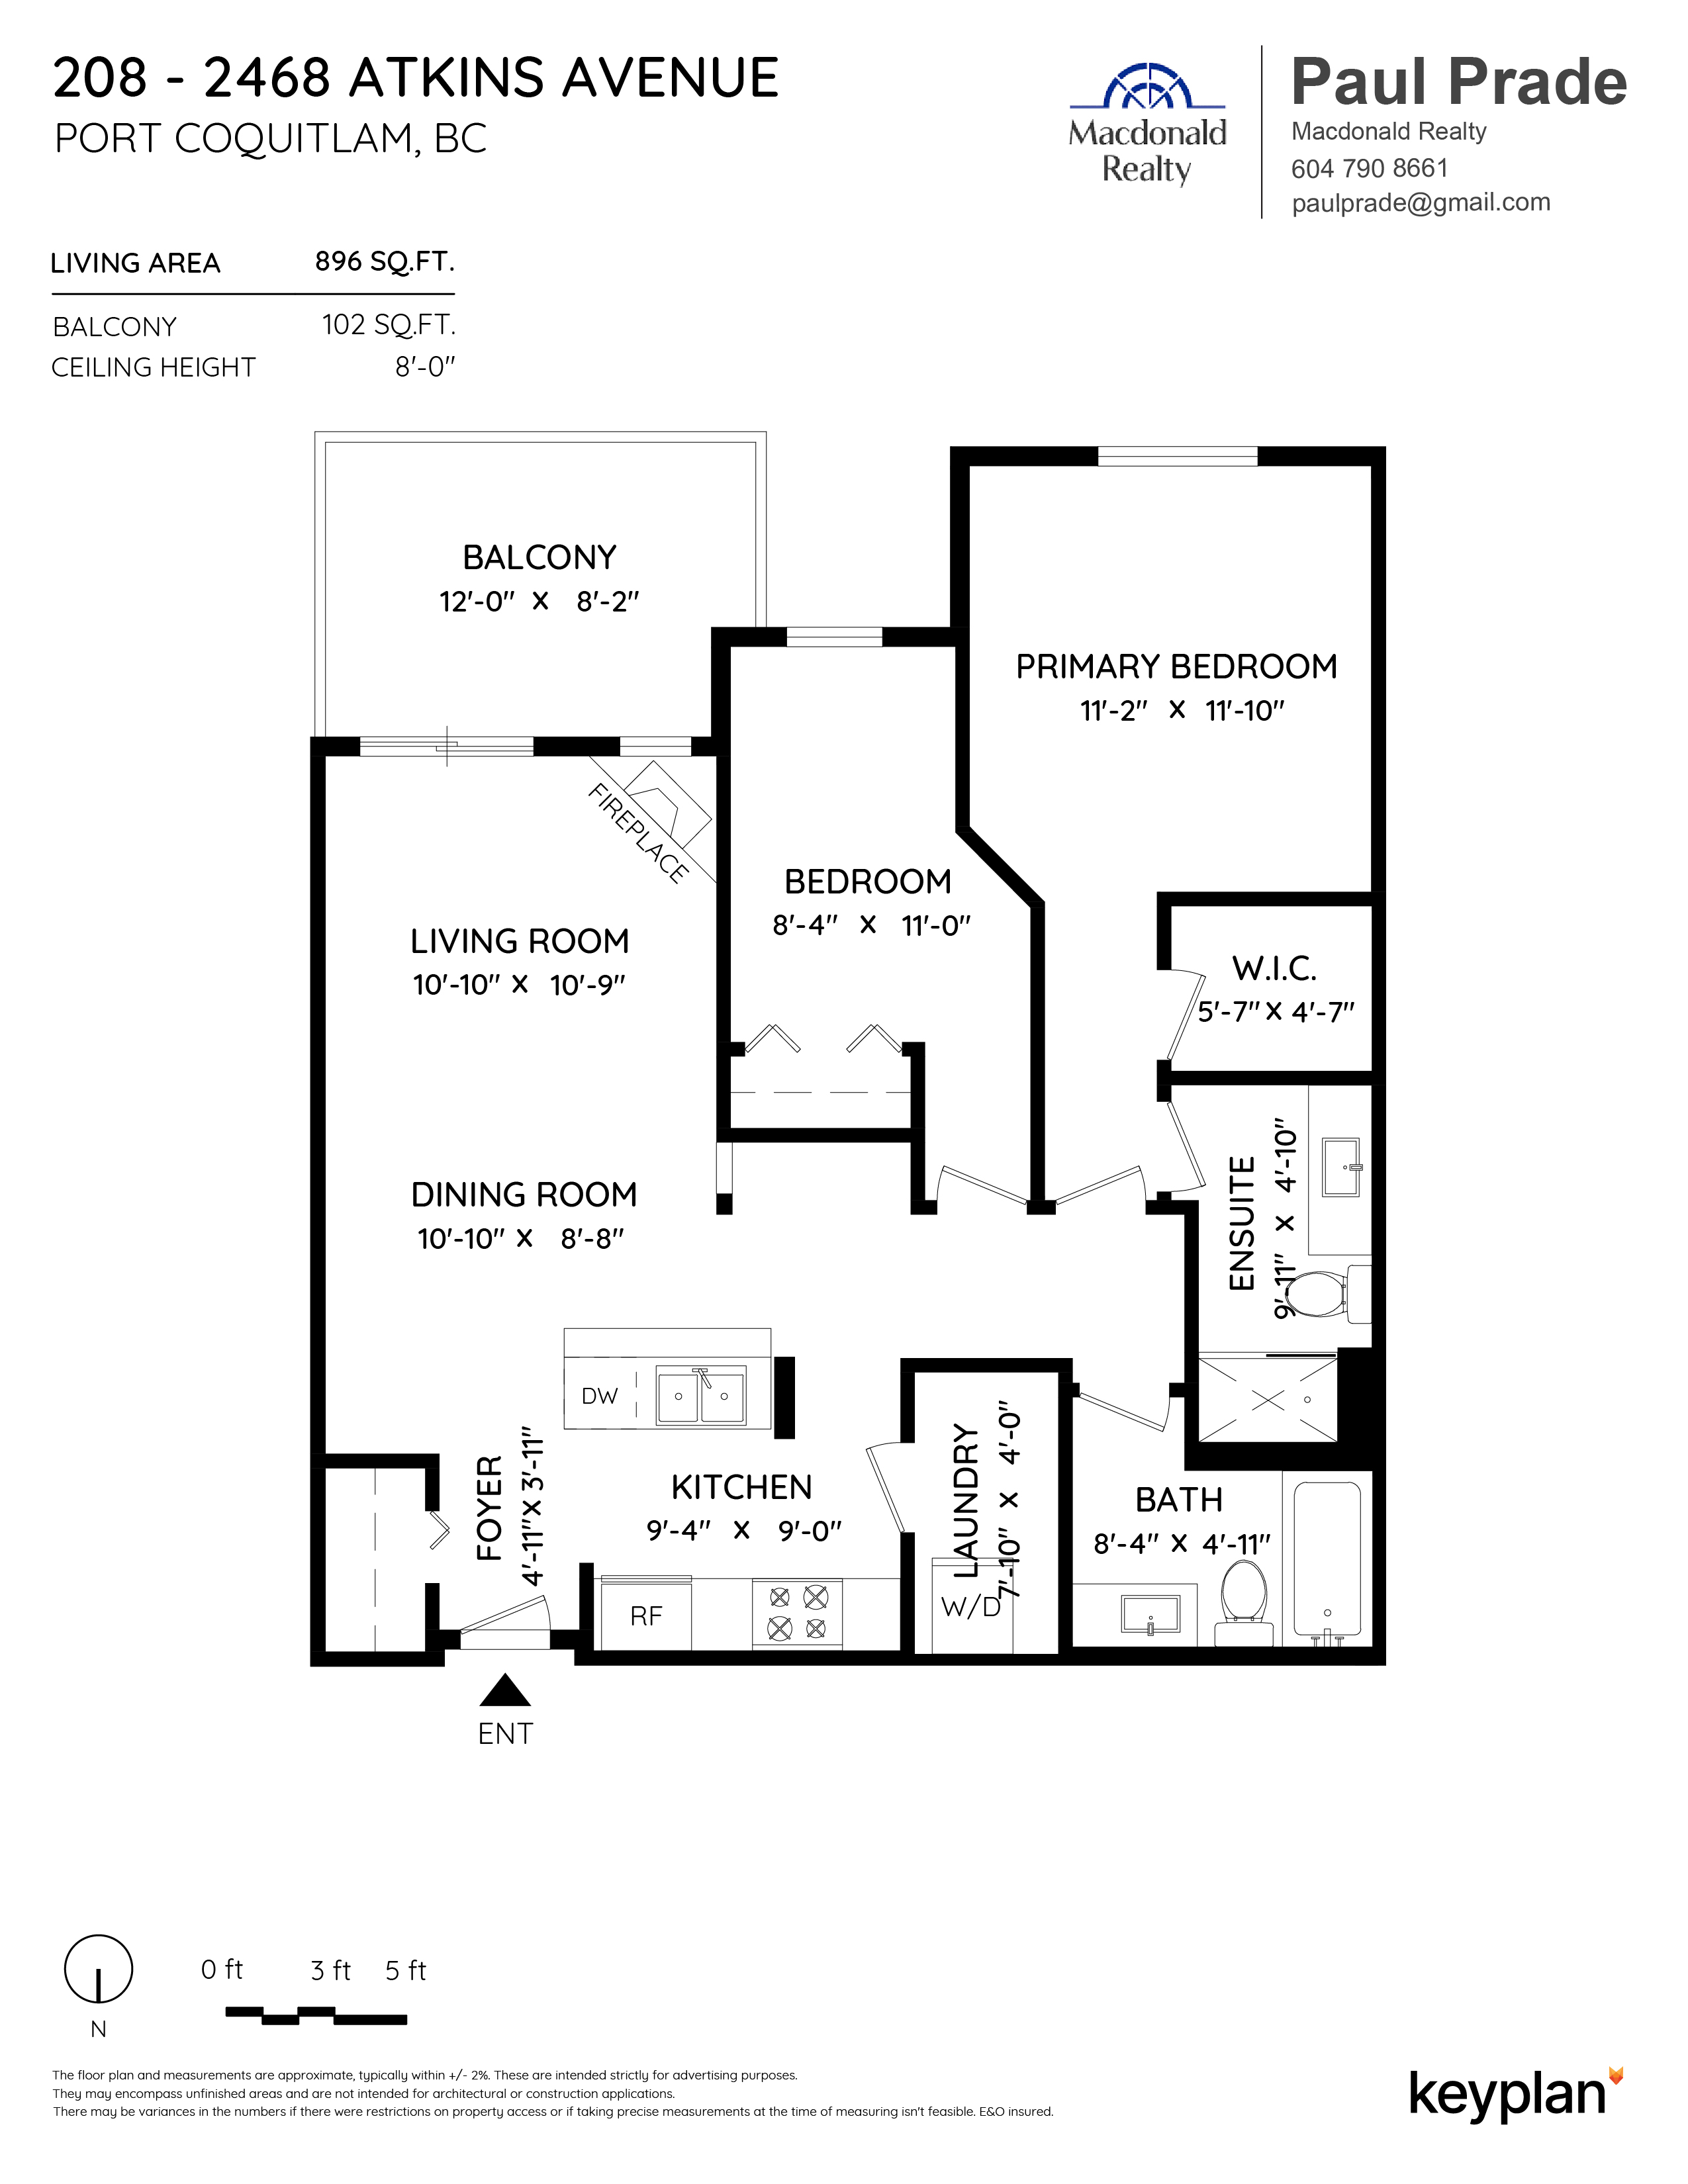 Paul Prade - Unit 208 - 2468 Atkins Avenue, Port Coquitlam, BC, Canada | Floor Plan 1